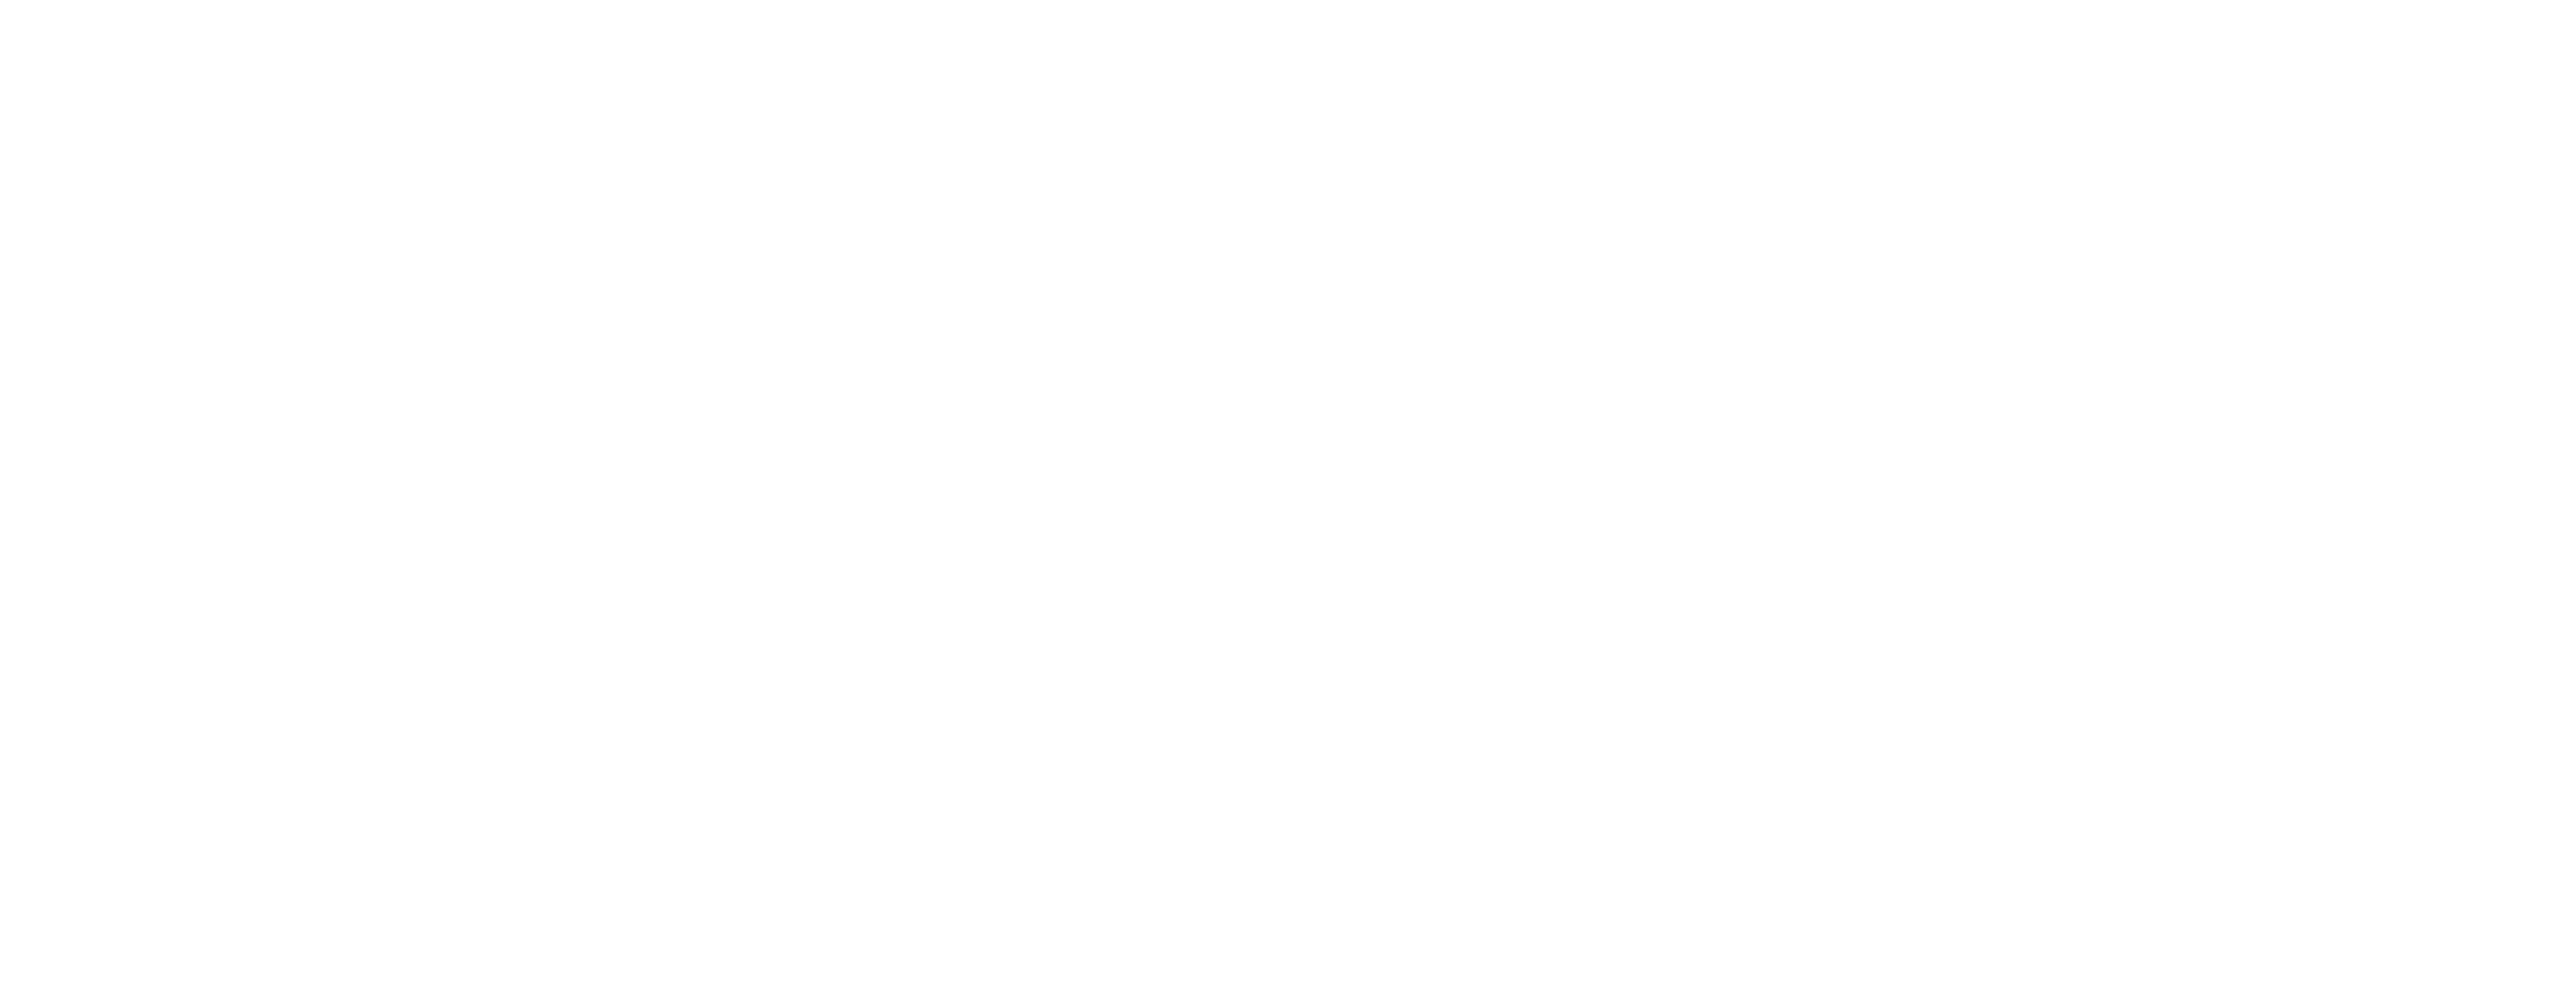 Aruba Lifestyle Experiences